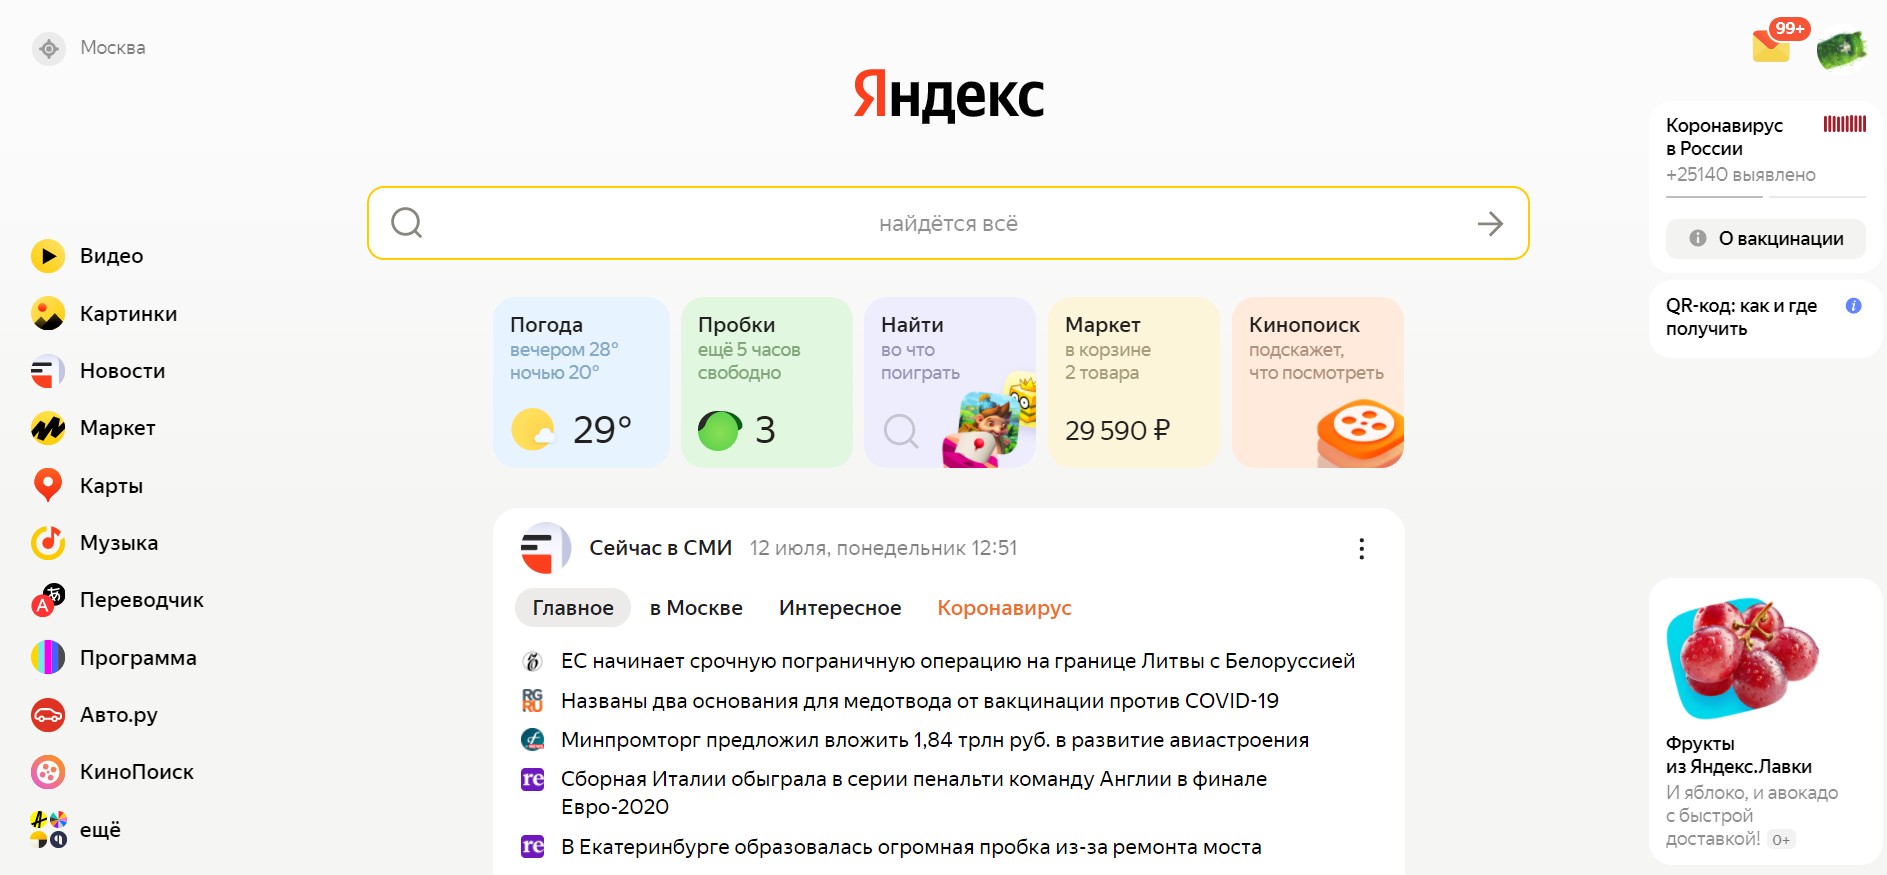 новости в новом дизайне главной Яндекса